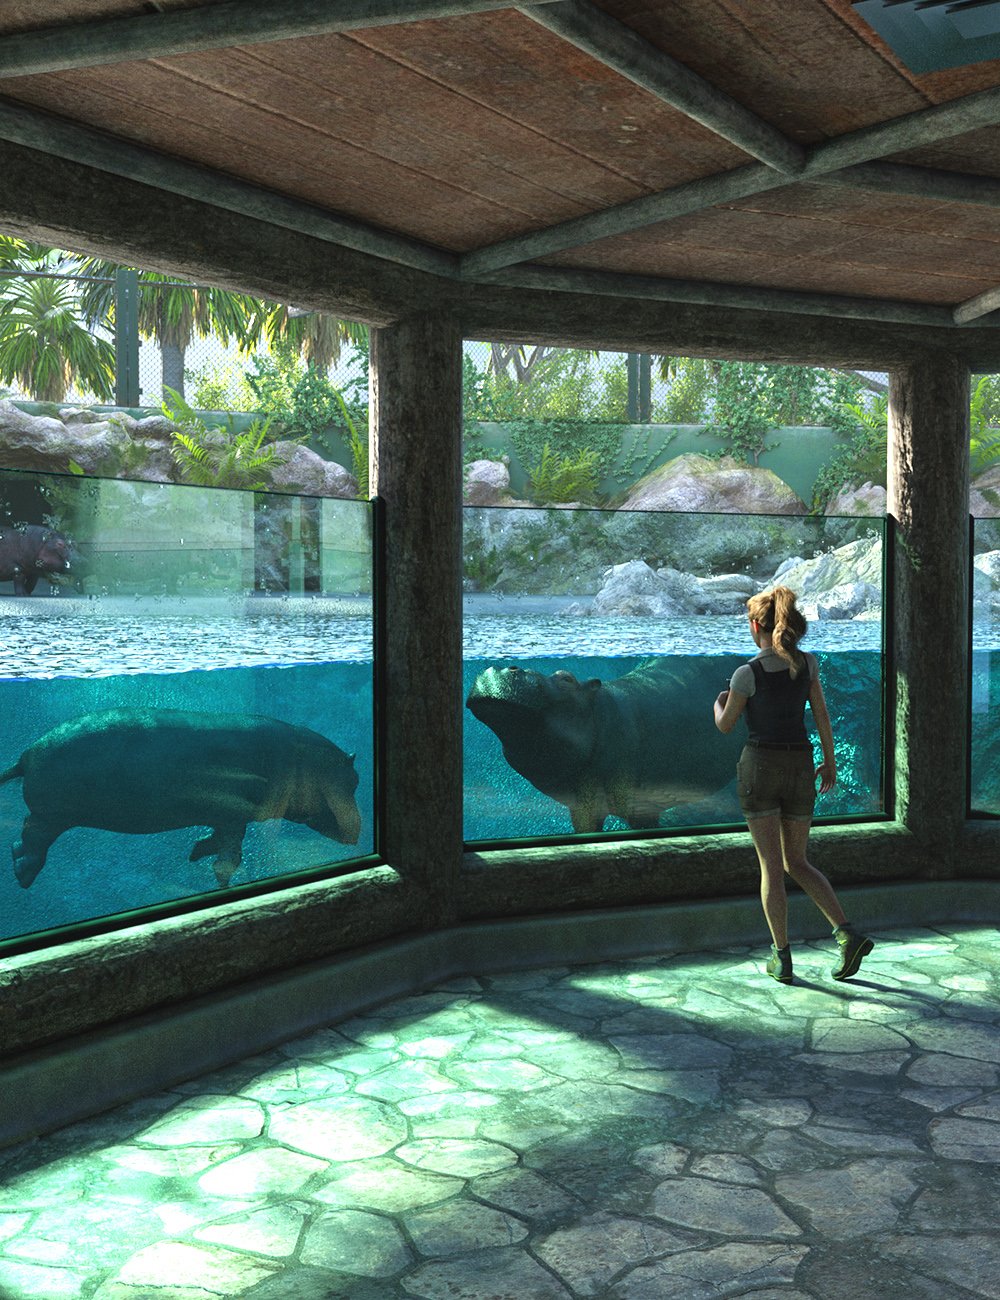 Zoo Pool by: Predatron, 3D Models by Daz 3D